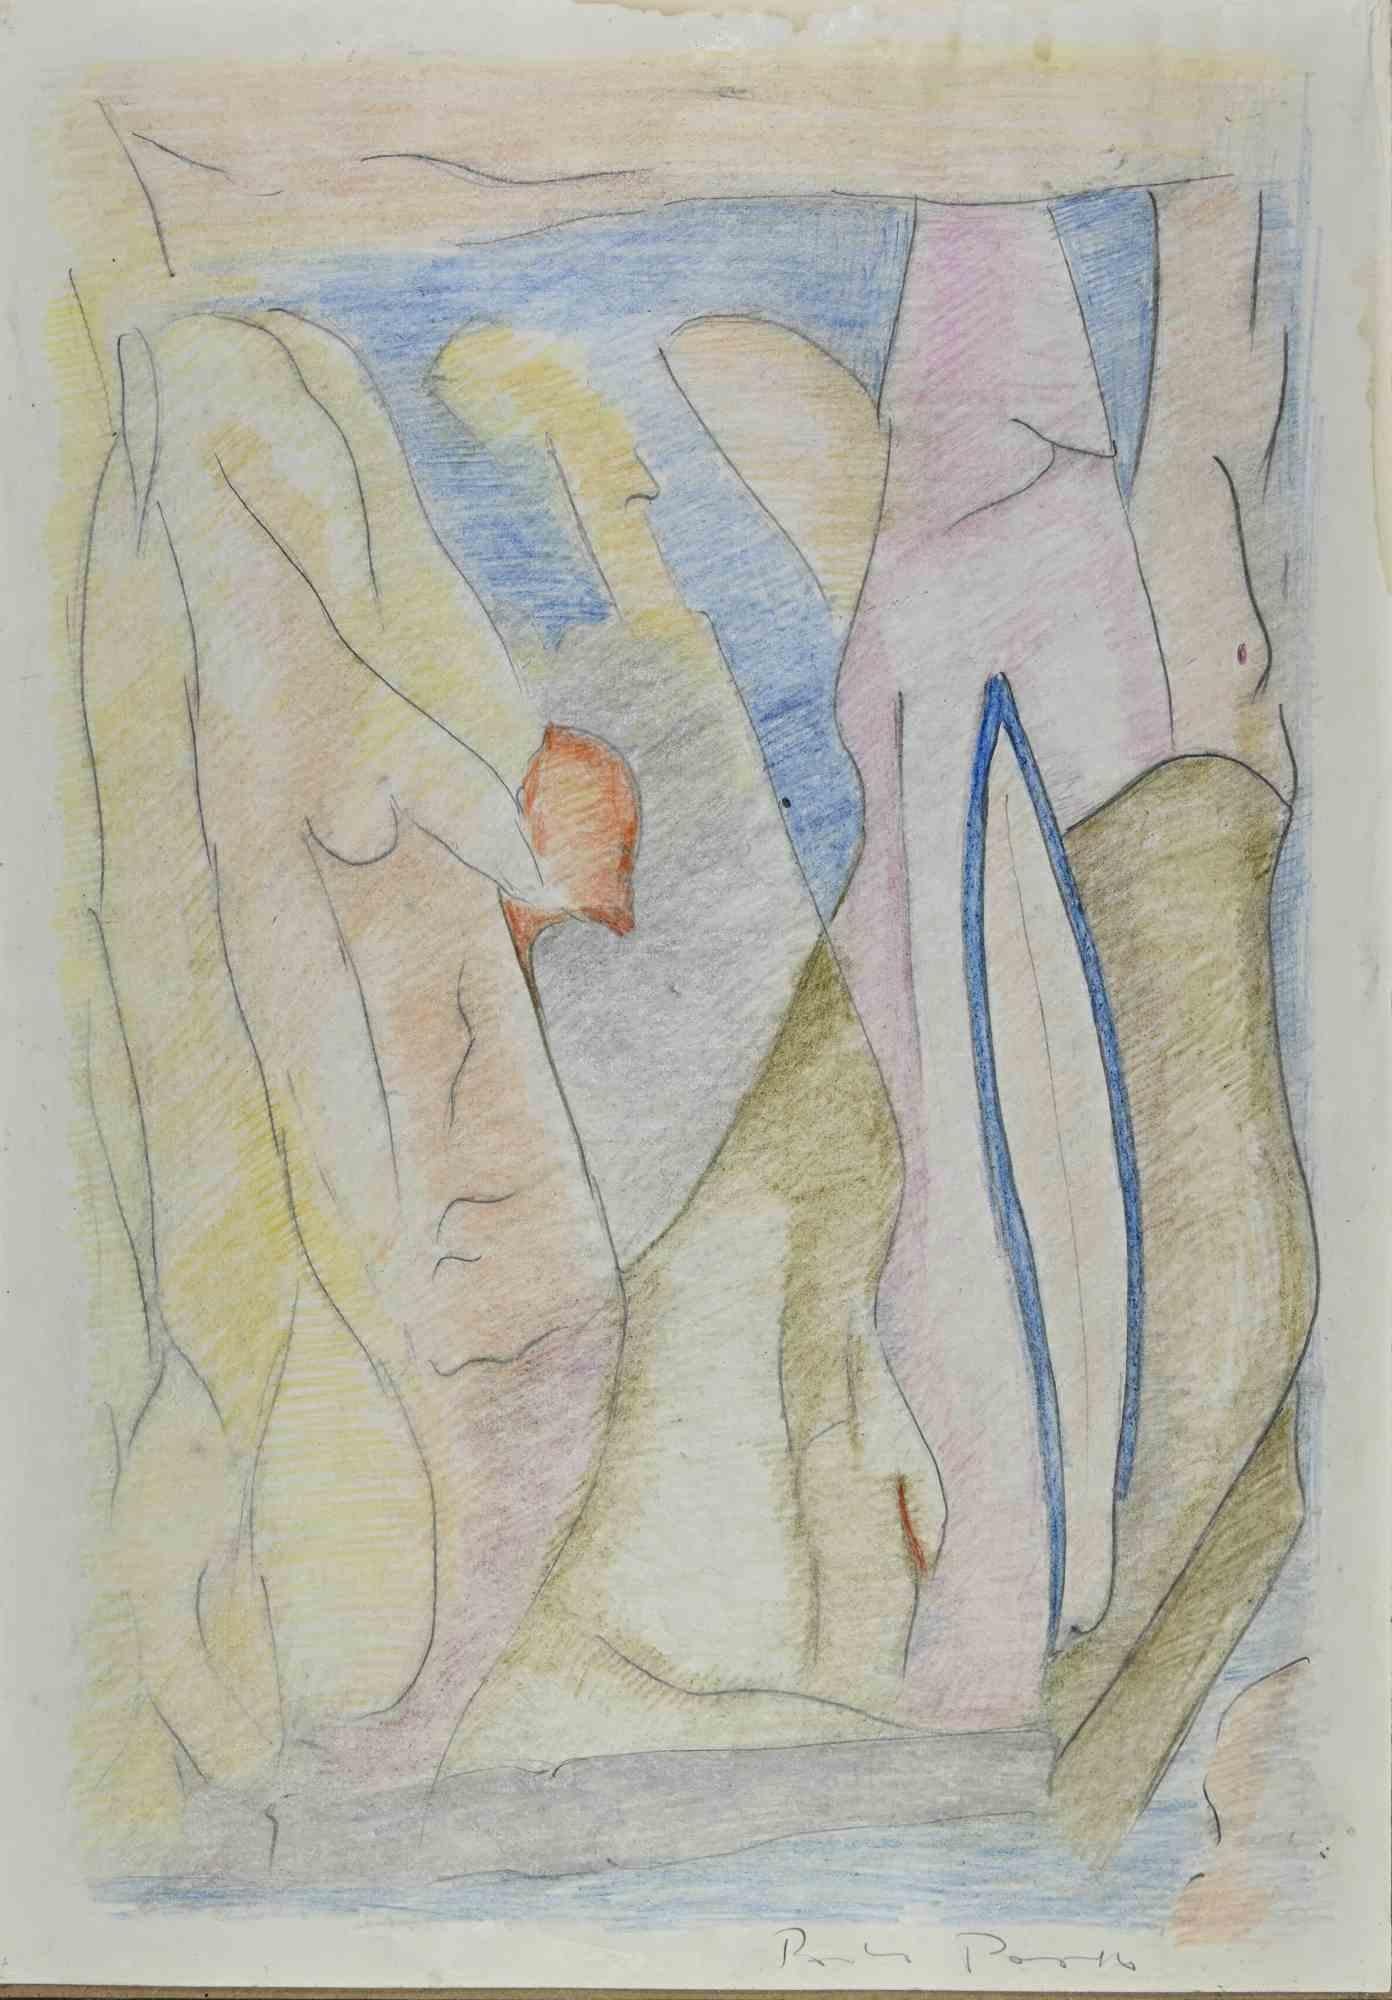 Astract composition ist ein Kunstwerk von Paolo Pasotto aus dem Jahr 1986. 

50 x 35 cm.

Handsigniert unten rechts. 

Gemischte Technik auf Papier.

Gute Bedingungen!